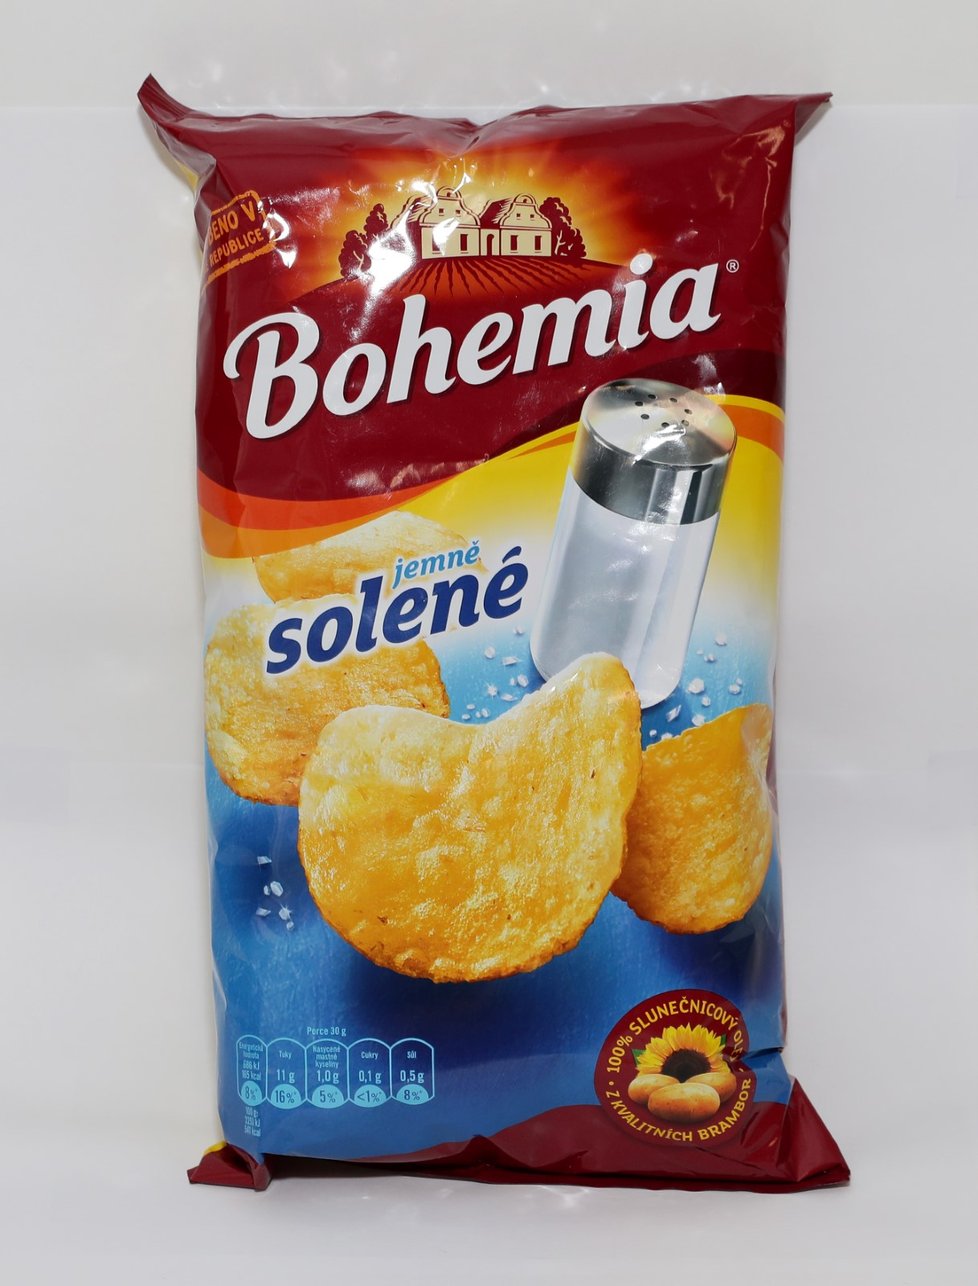 Tvrdší Bohemia Chips jemně solené. Byly akorát slané a chuťově velmi dobré. Hodnotitelé je označili za mastnější, pro někoho byly tvrdší a měly tmavé okraje. Hodnotitelé popisovali, že měly netypickou chuť a vůni, kterou nedokázali popsat.